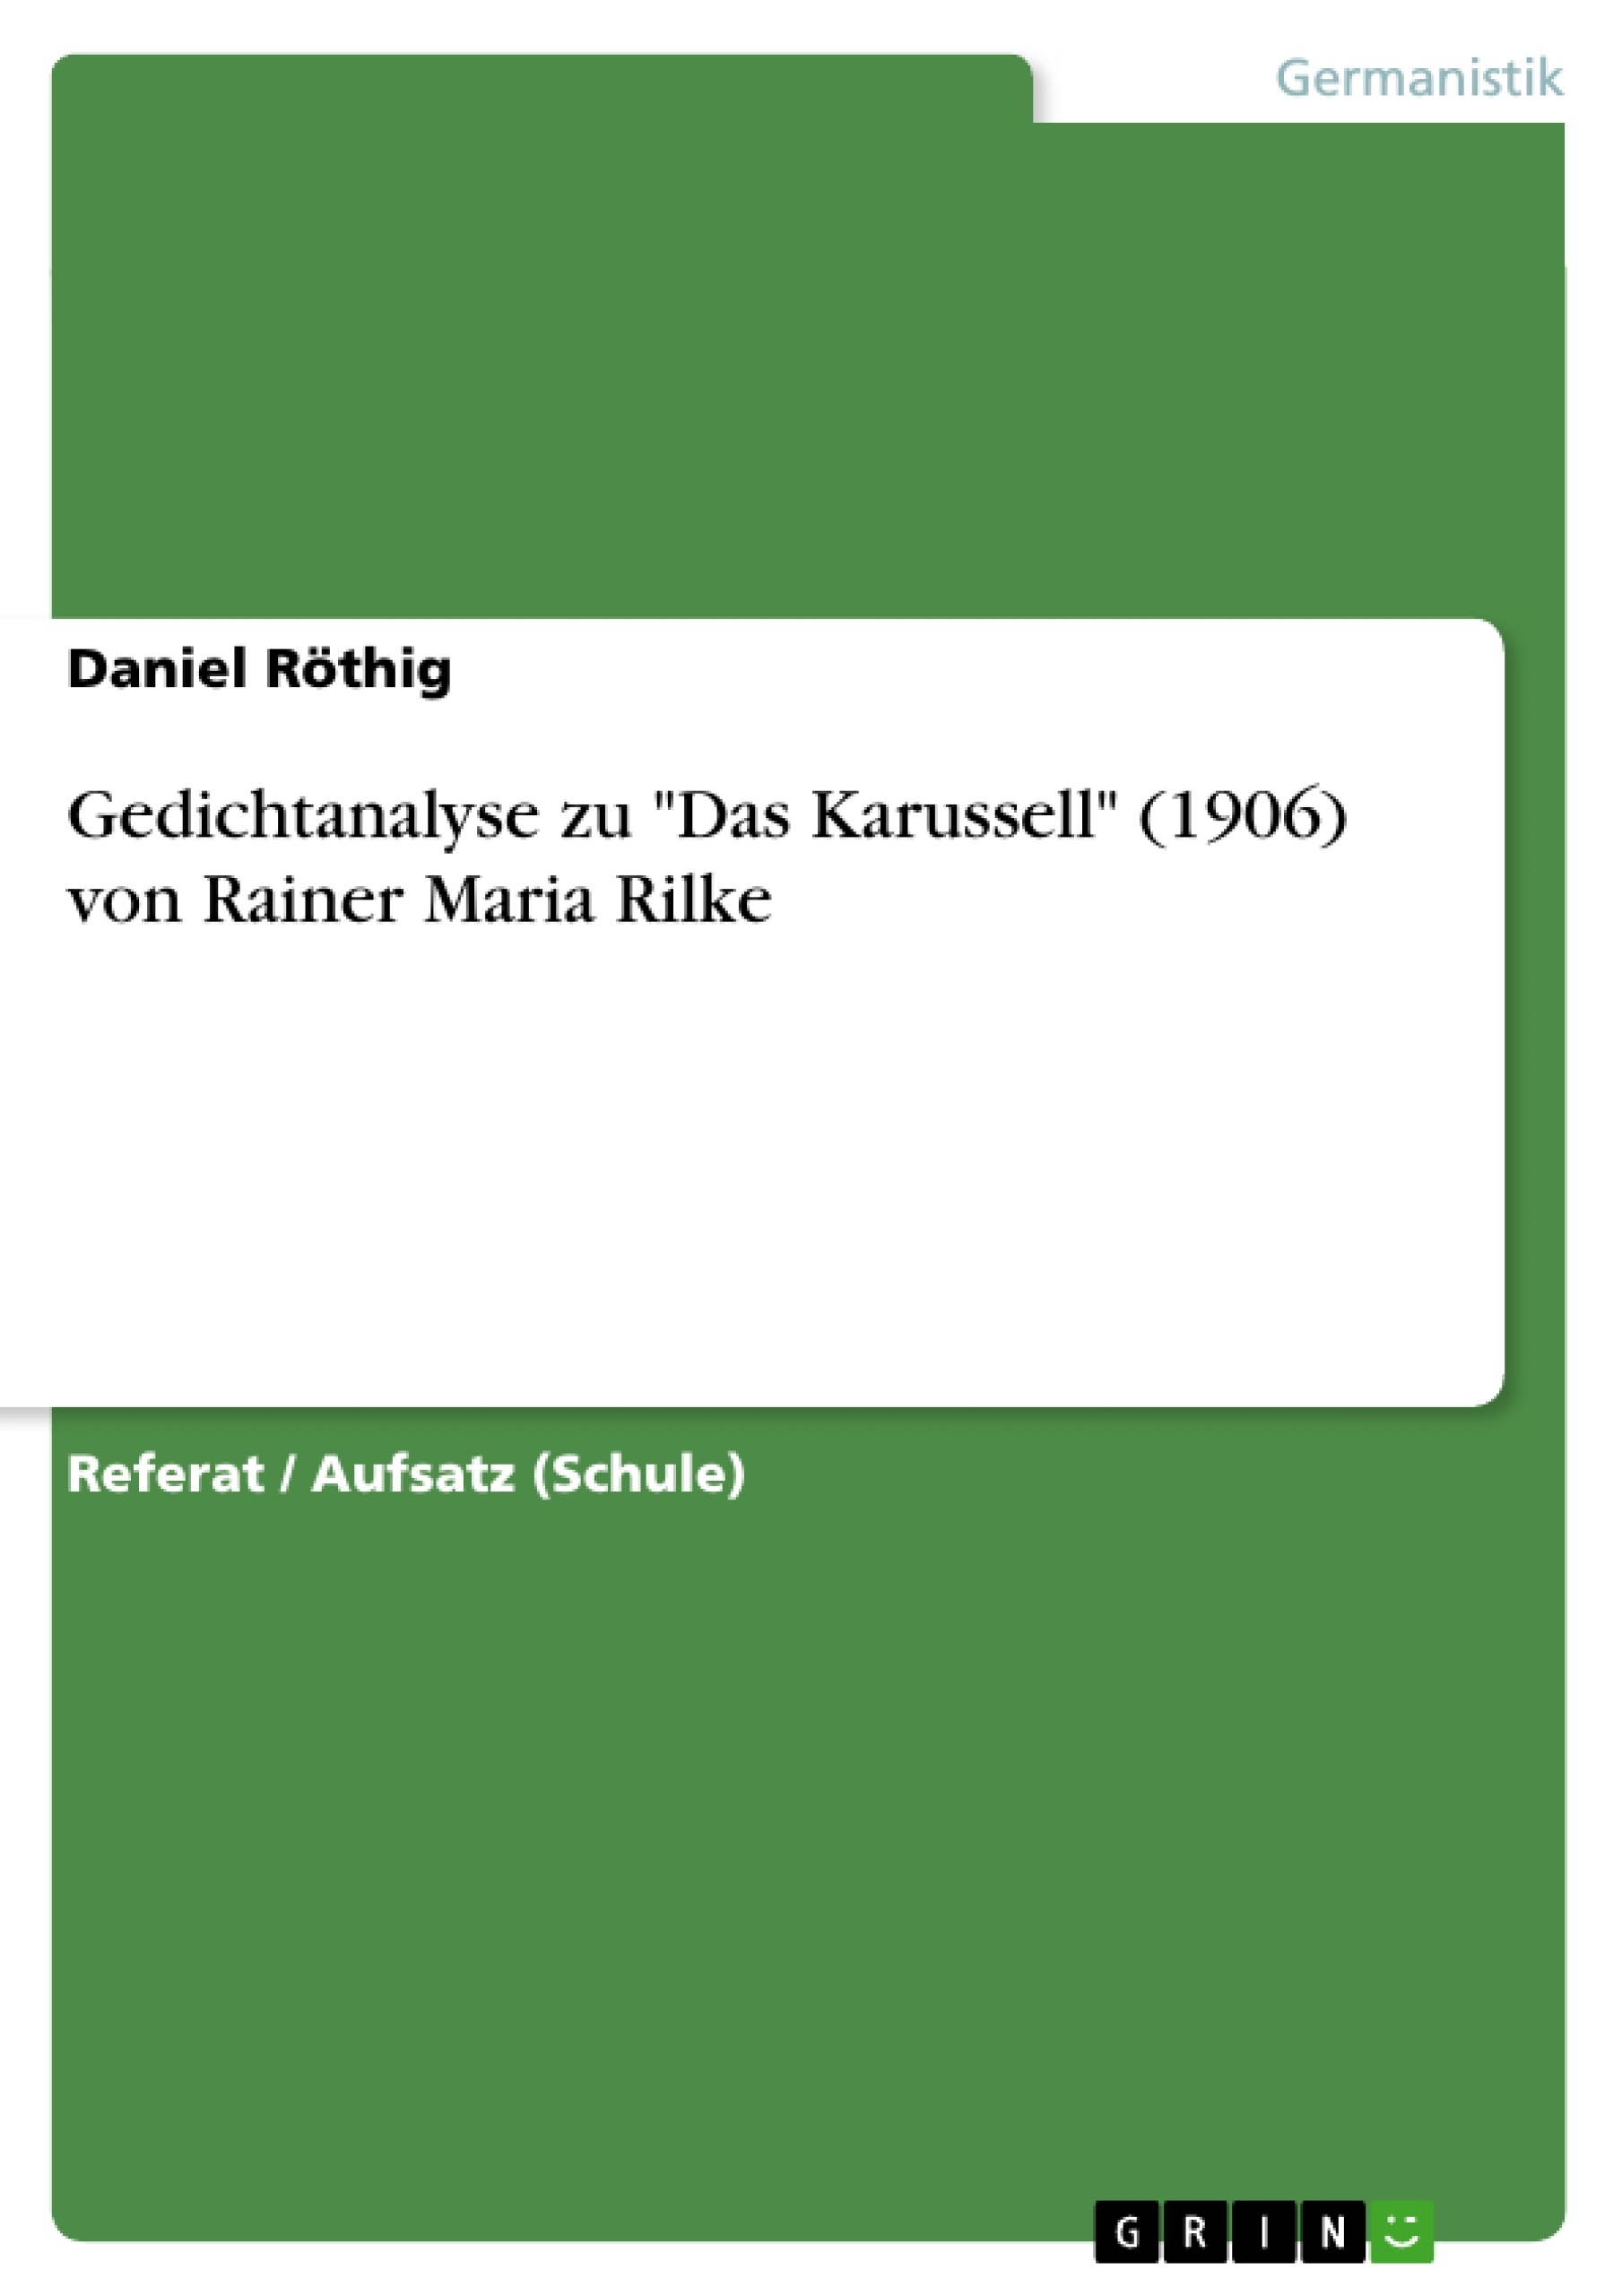 Title: Gedichtanalyse zu "Das Karussell" (1906) von Rainer Maria Rilke